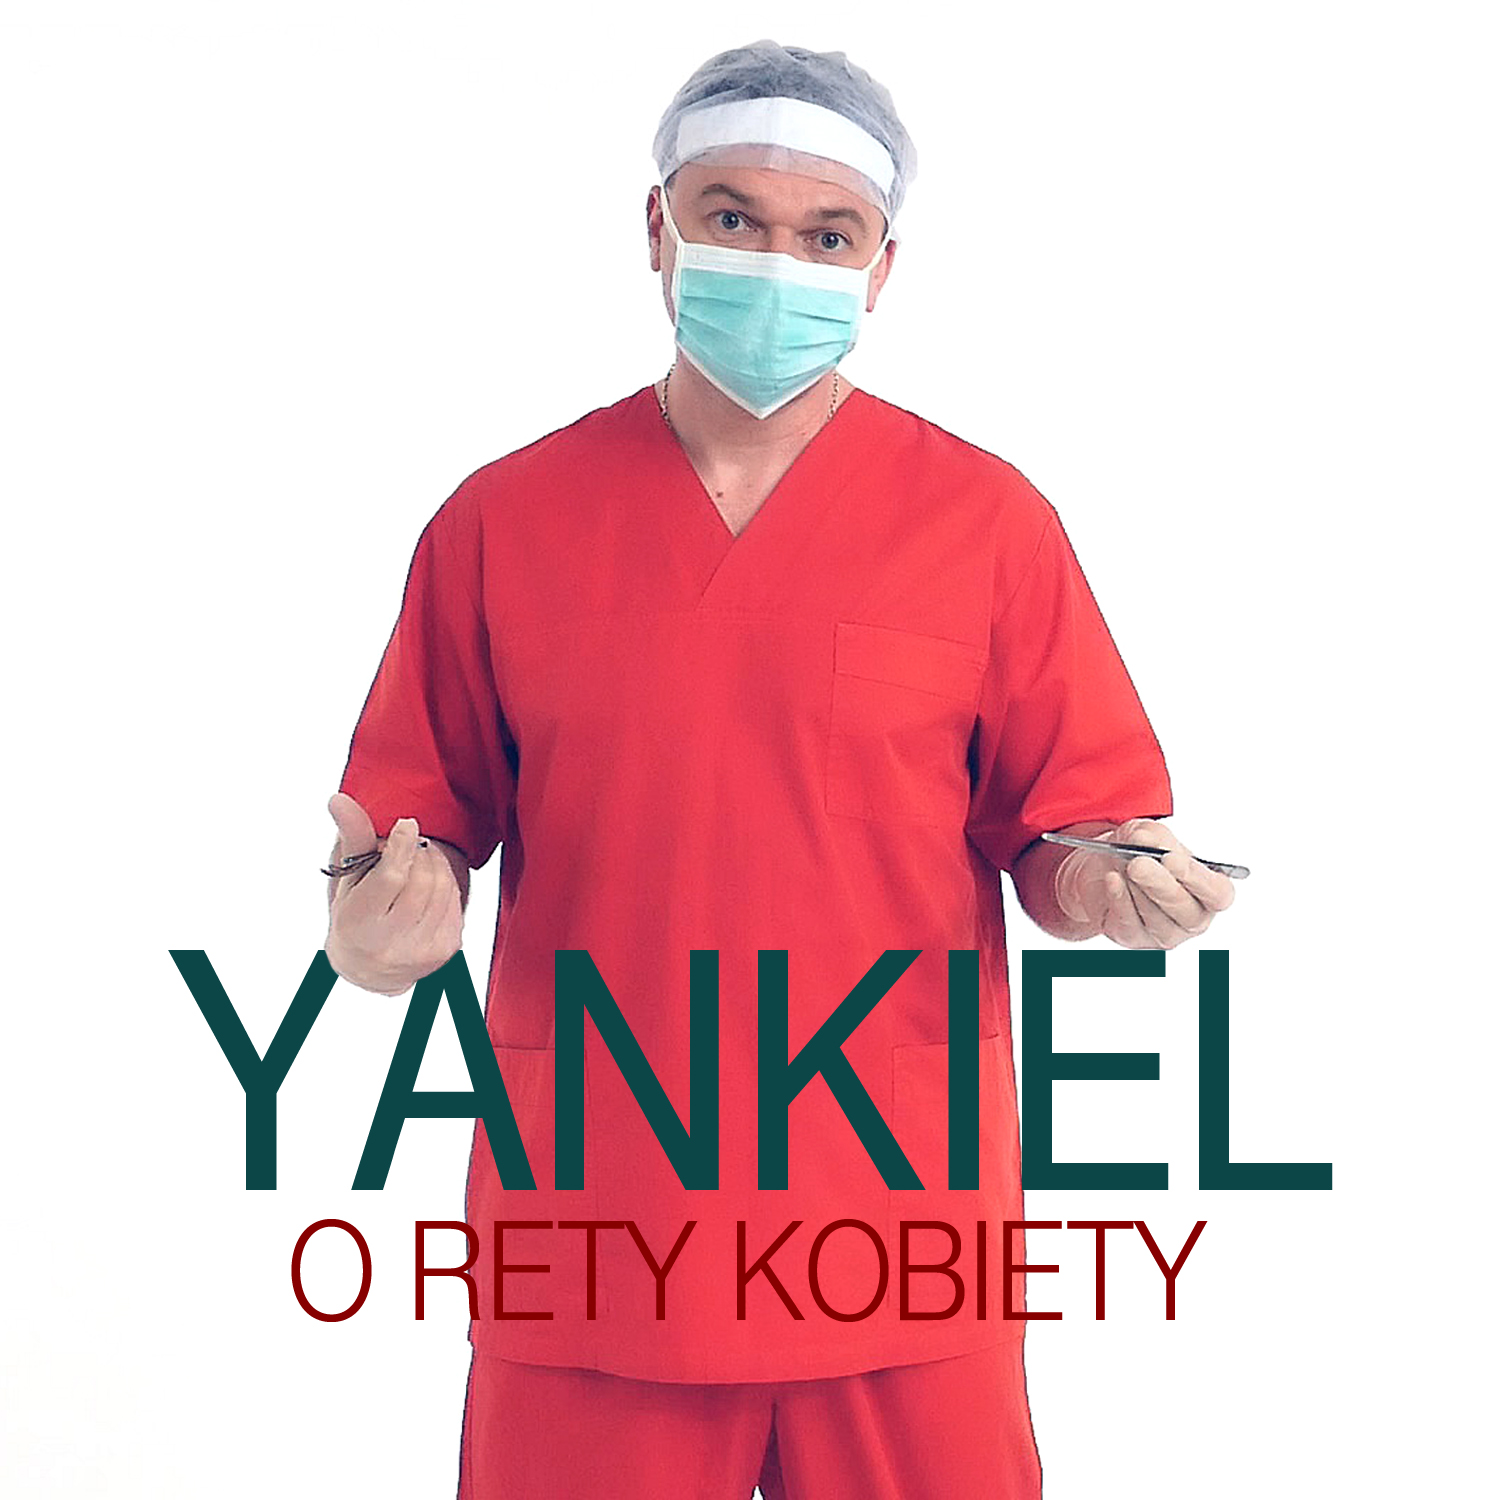 Yankiel - O Rety Kobiety (Extended Mix)